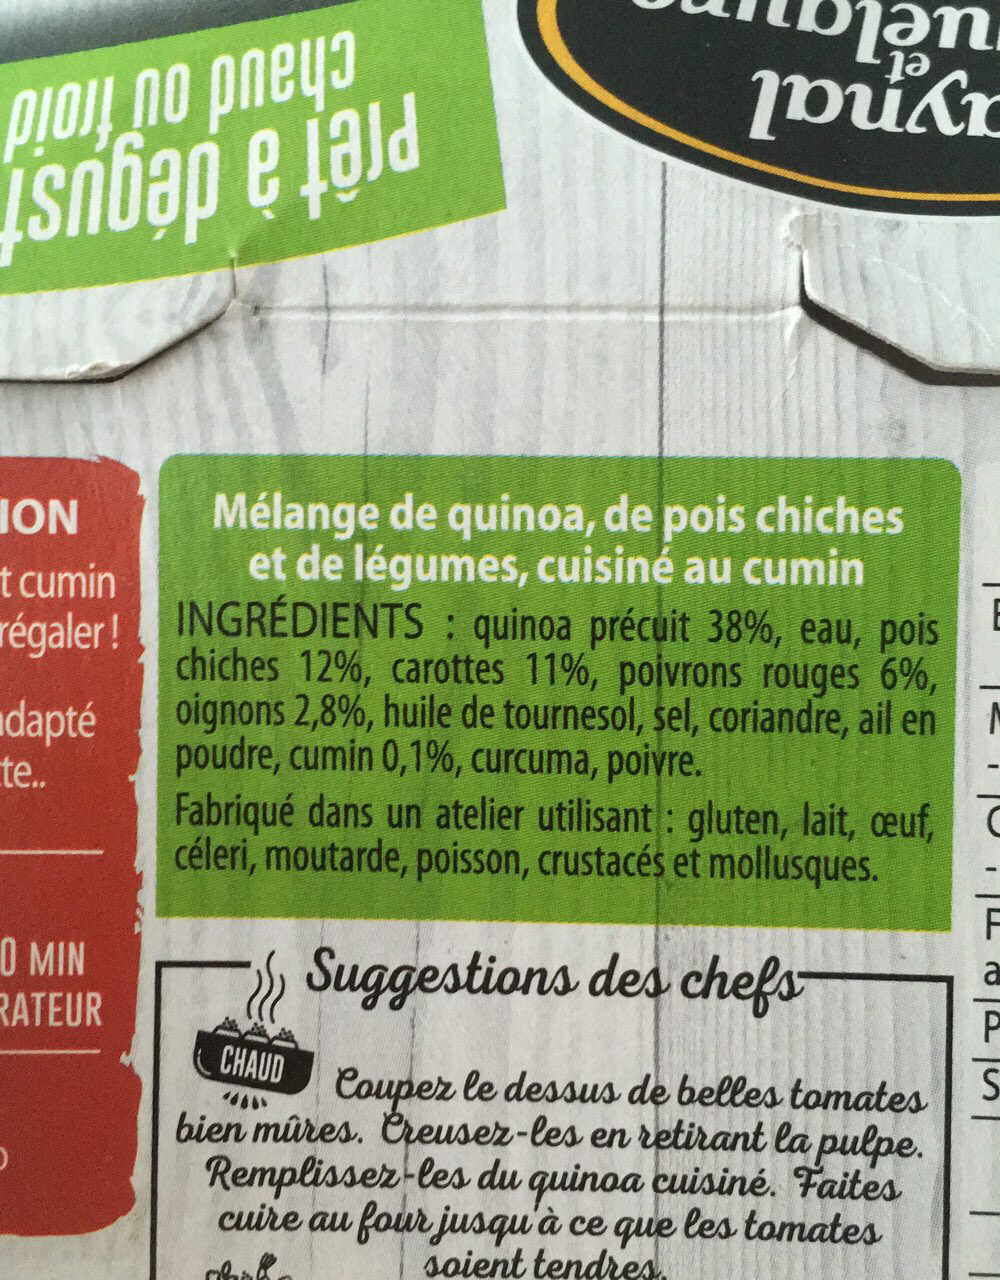 Quinoa cuisiné - Ingredientes - fr